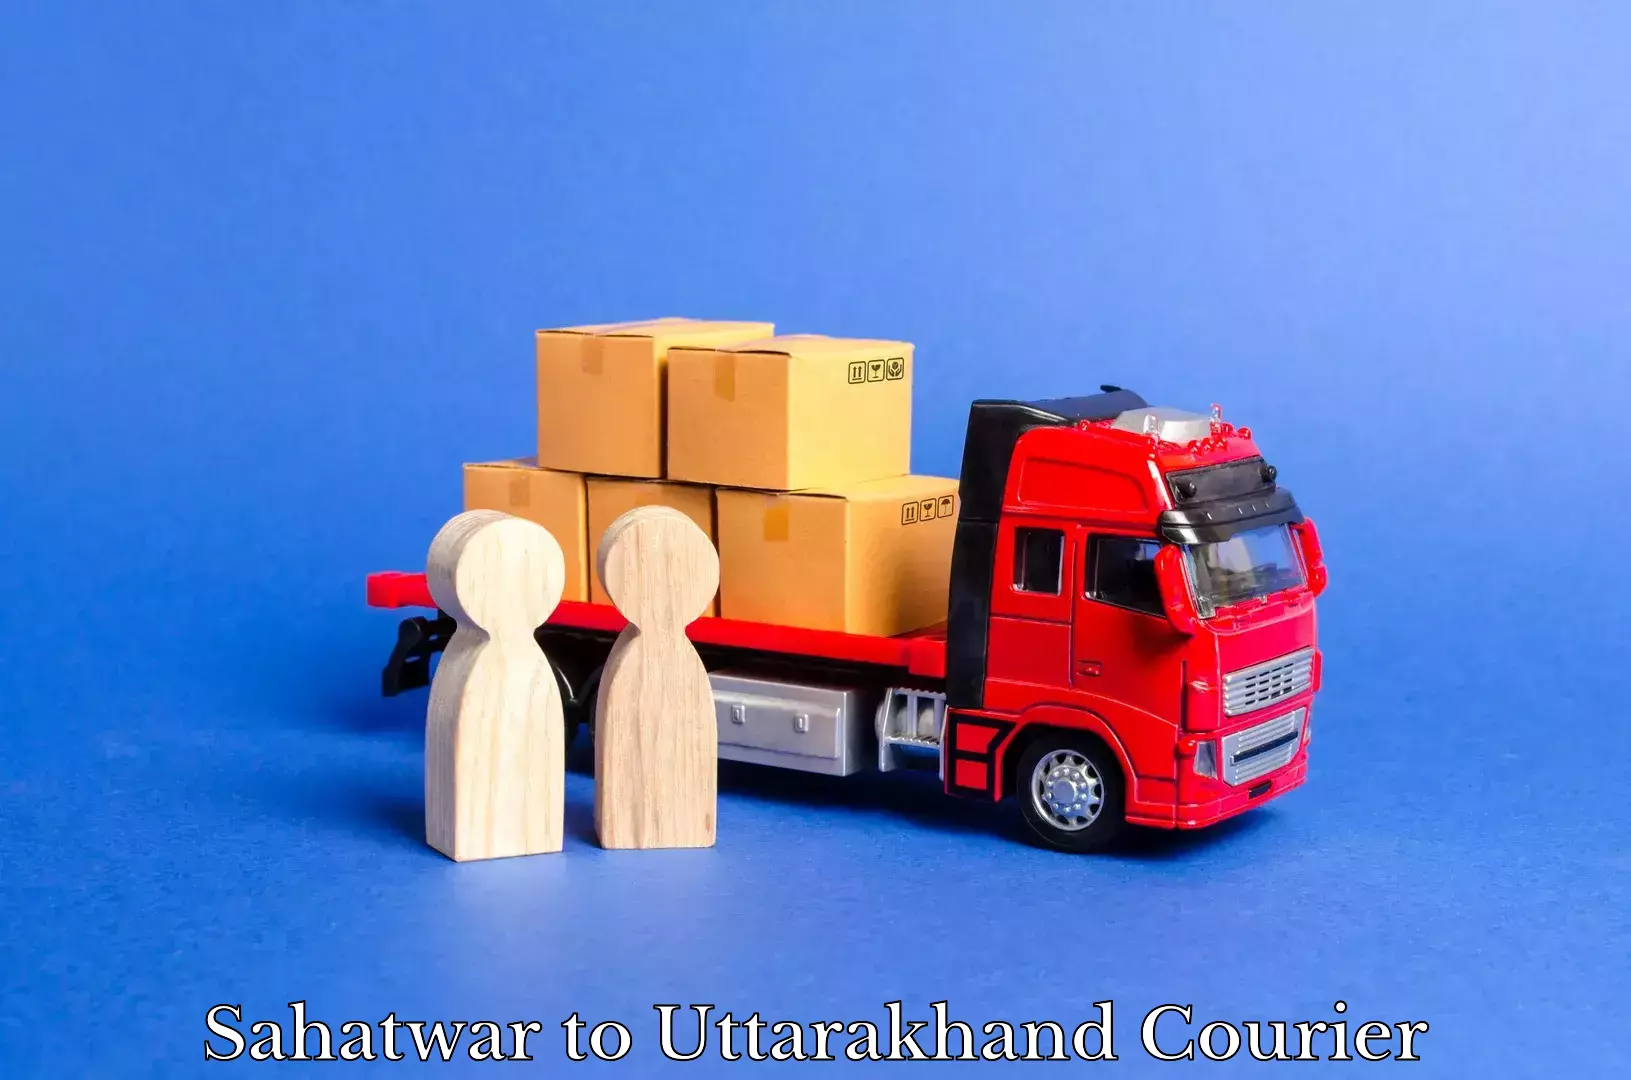 Lightweight courier Sahatwar to Uttarakhand